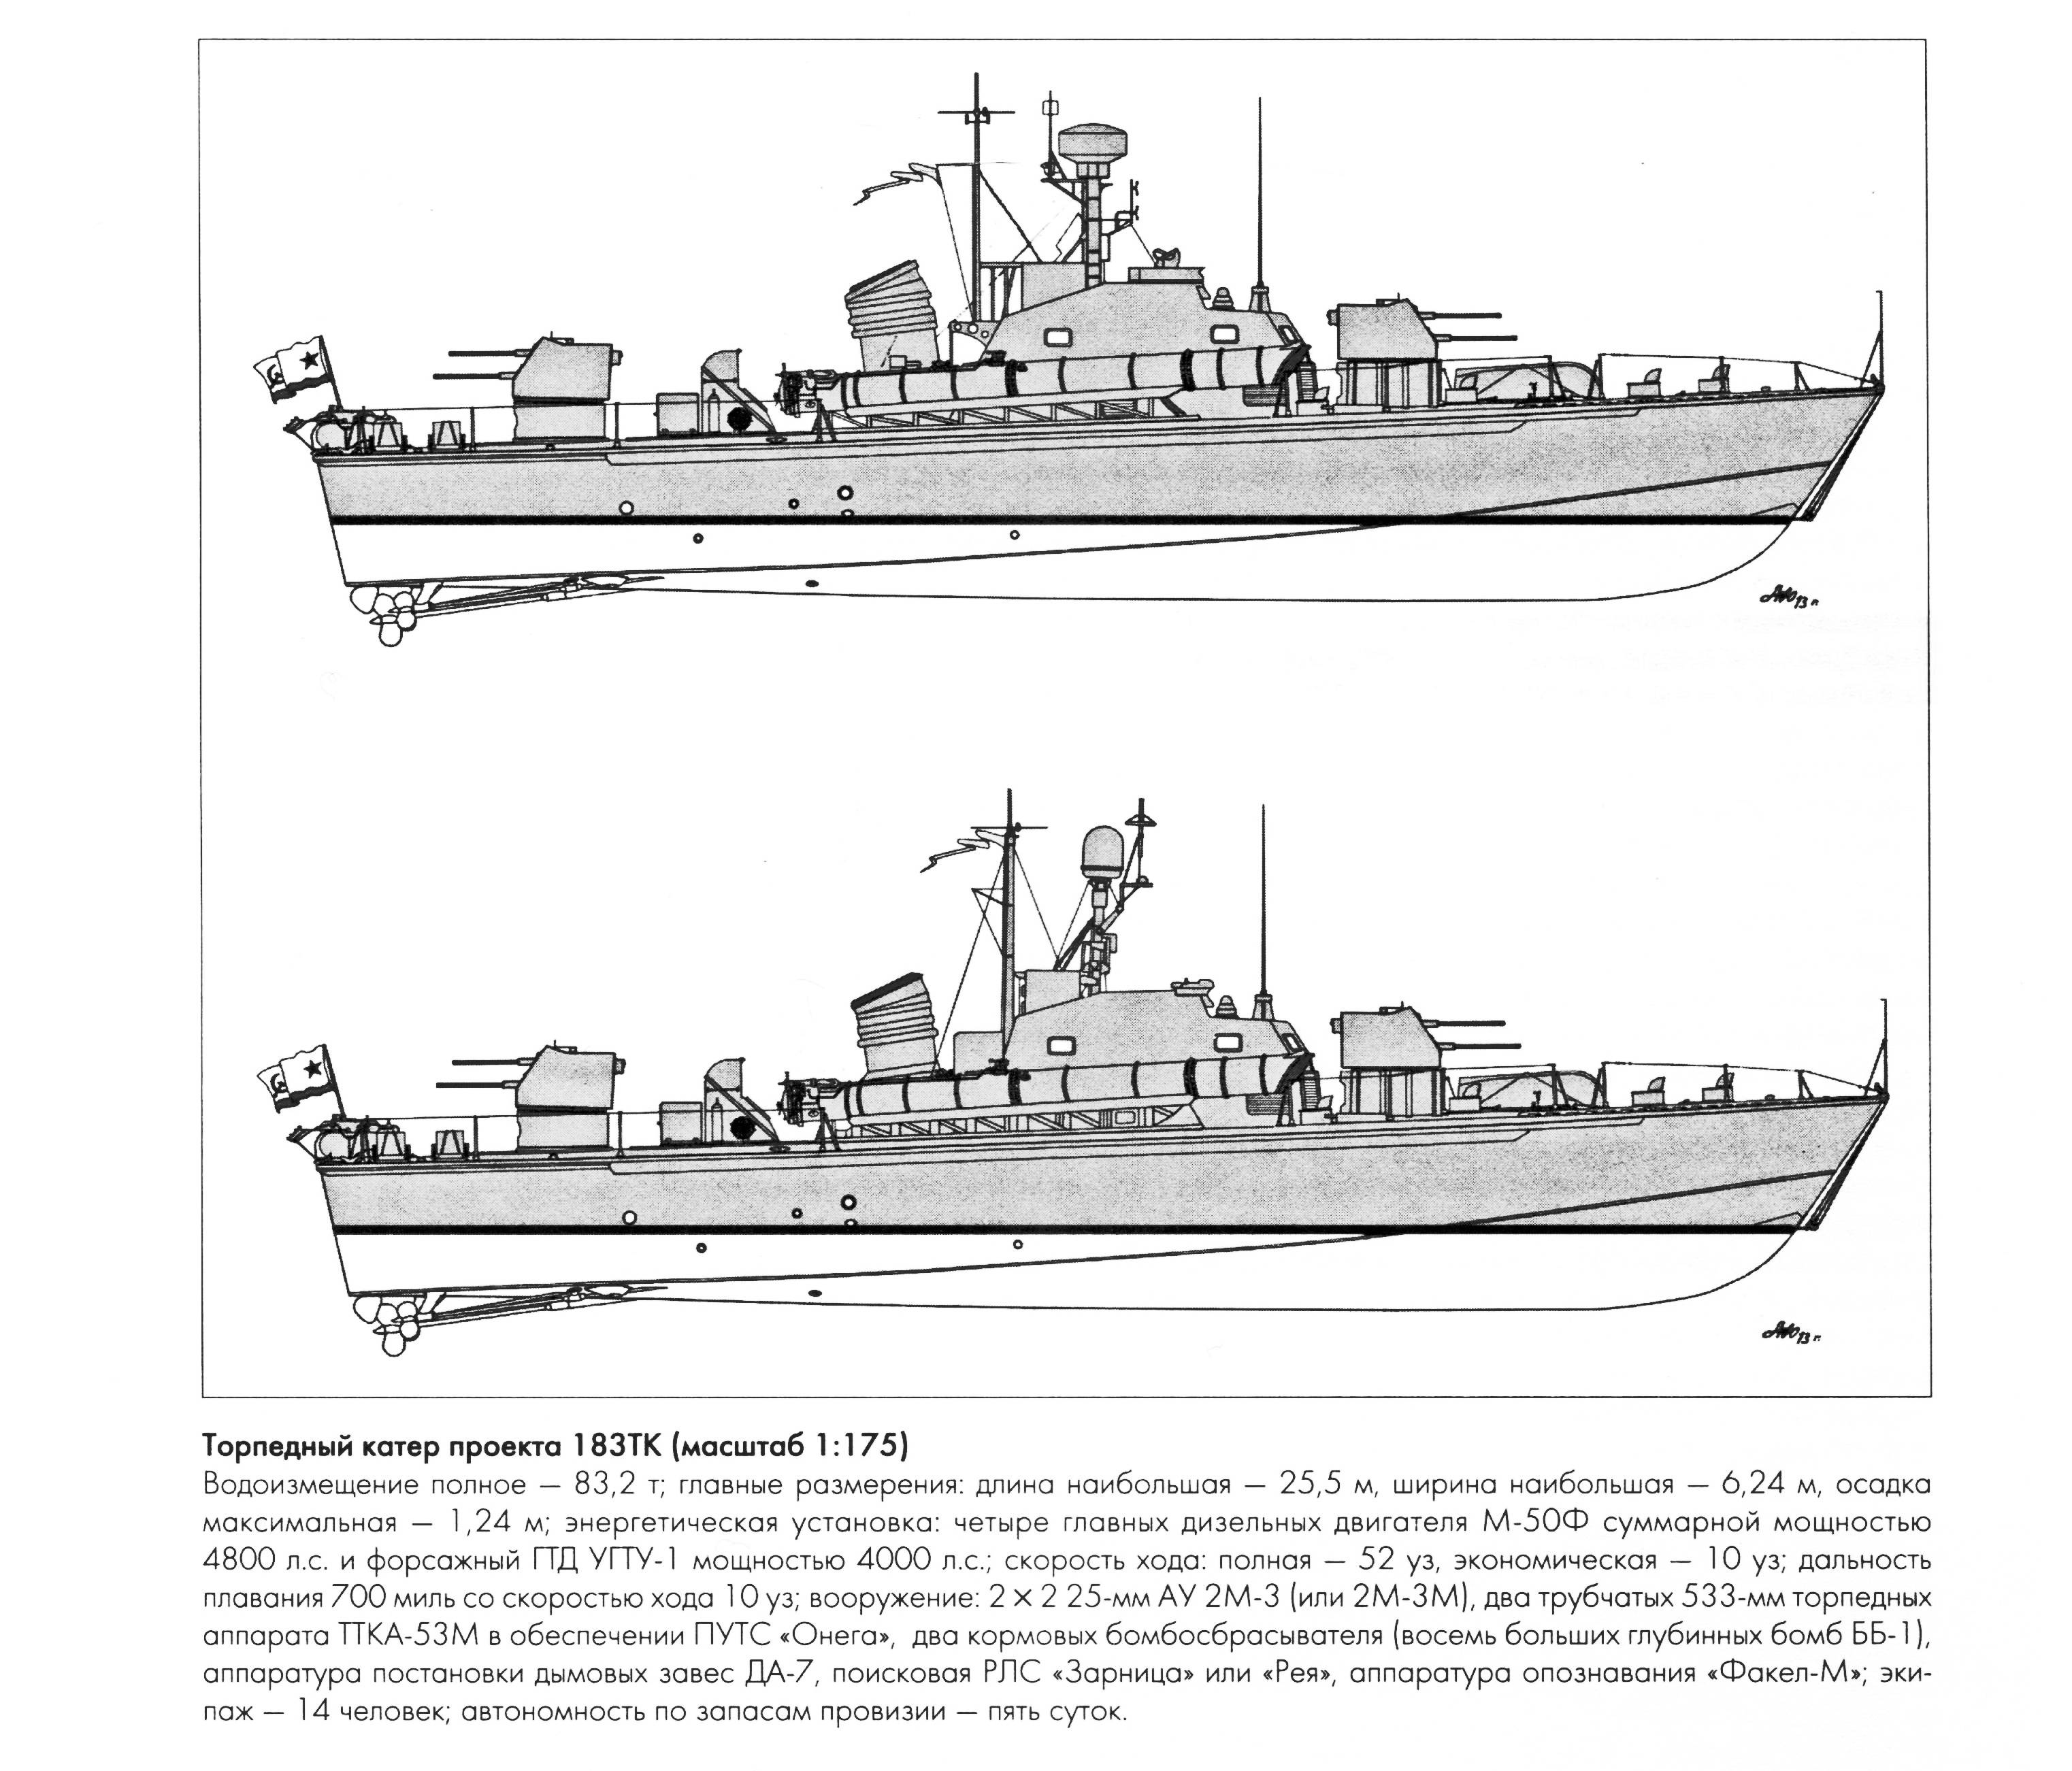 Торпедный катер комсомолец: проект 123, боевое применение, вооружение, характеристики (ттх), конструкция